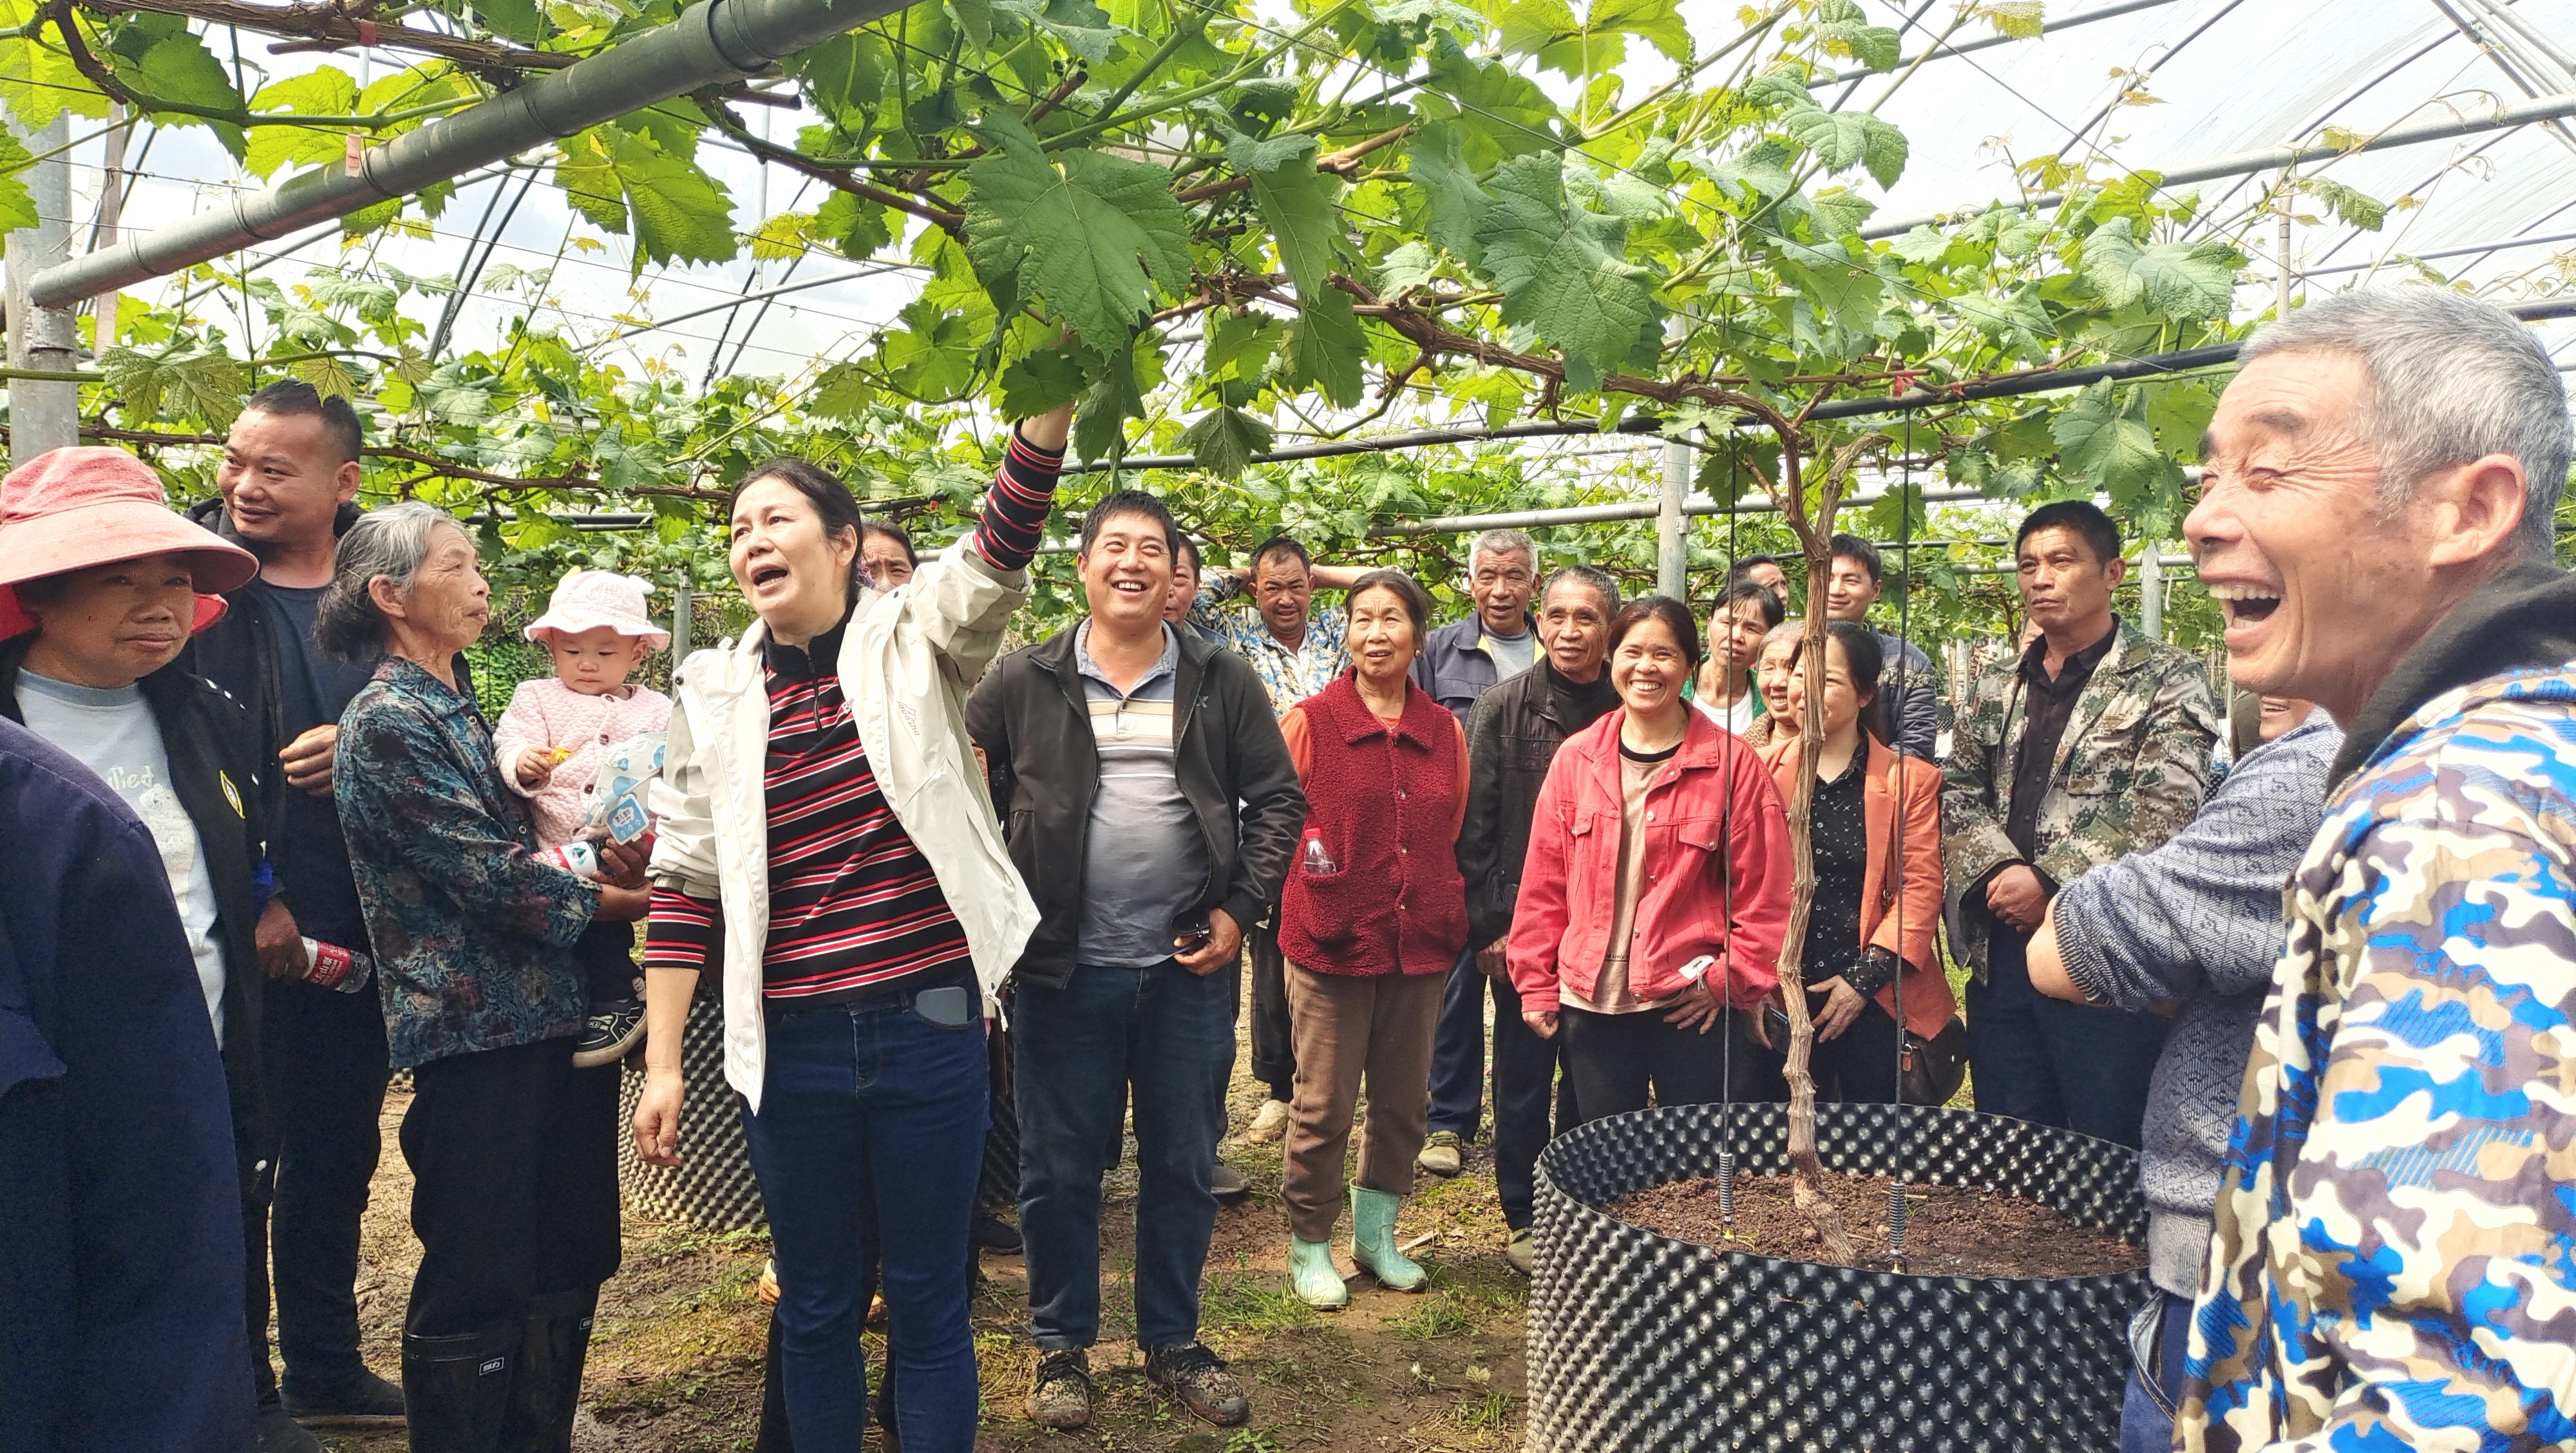 葡萄所联合桂林市农业农村局在全州县毛竹山村举办葡萄果园春季管理技术培训